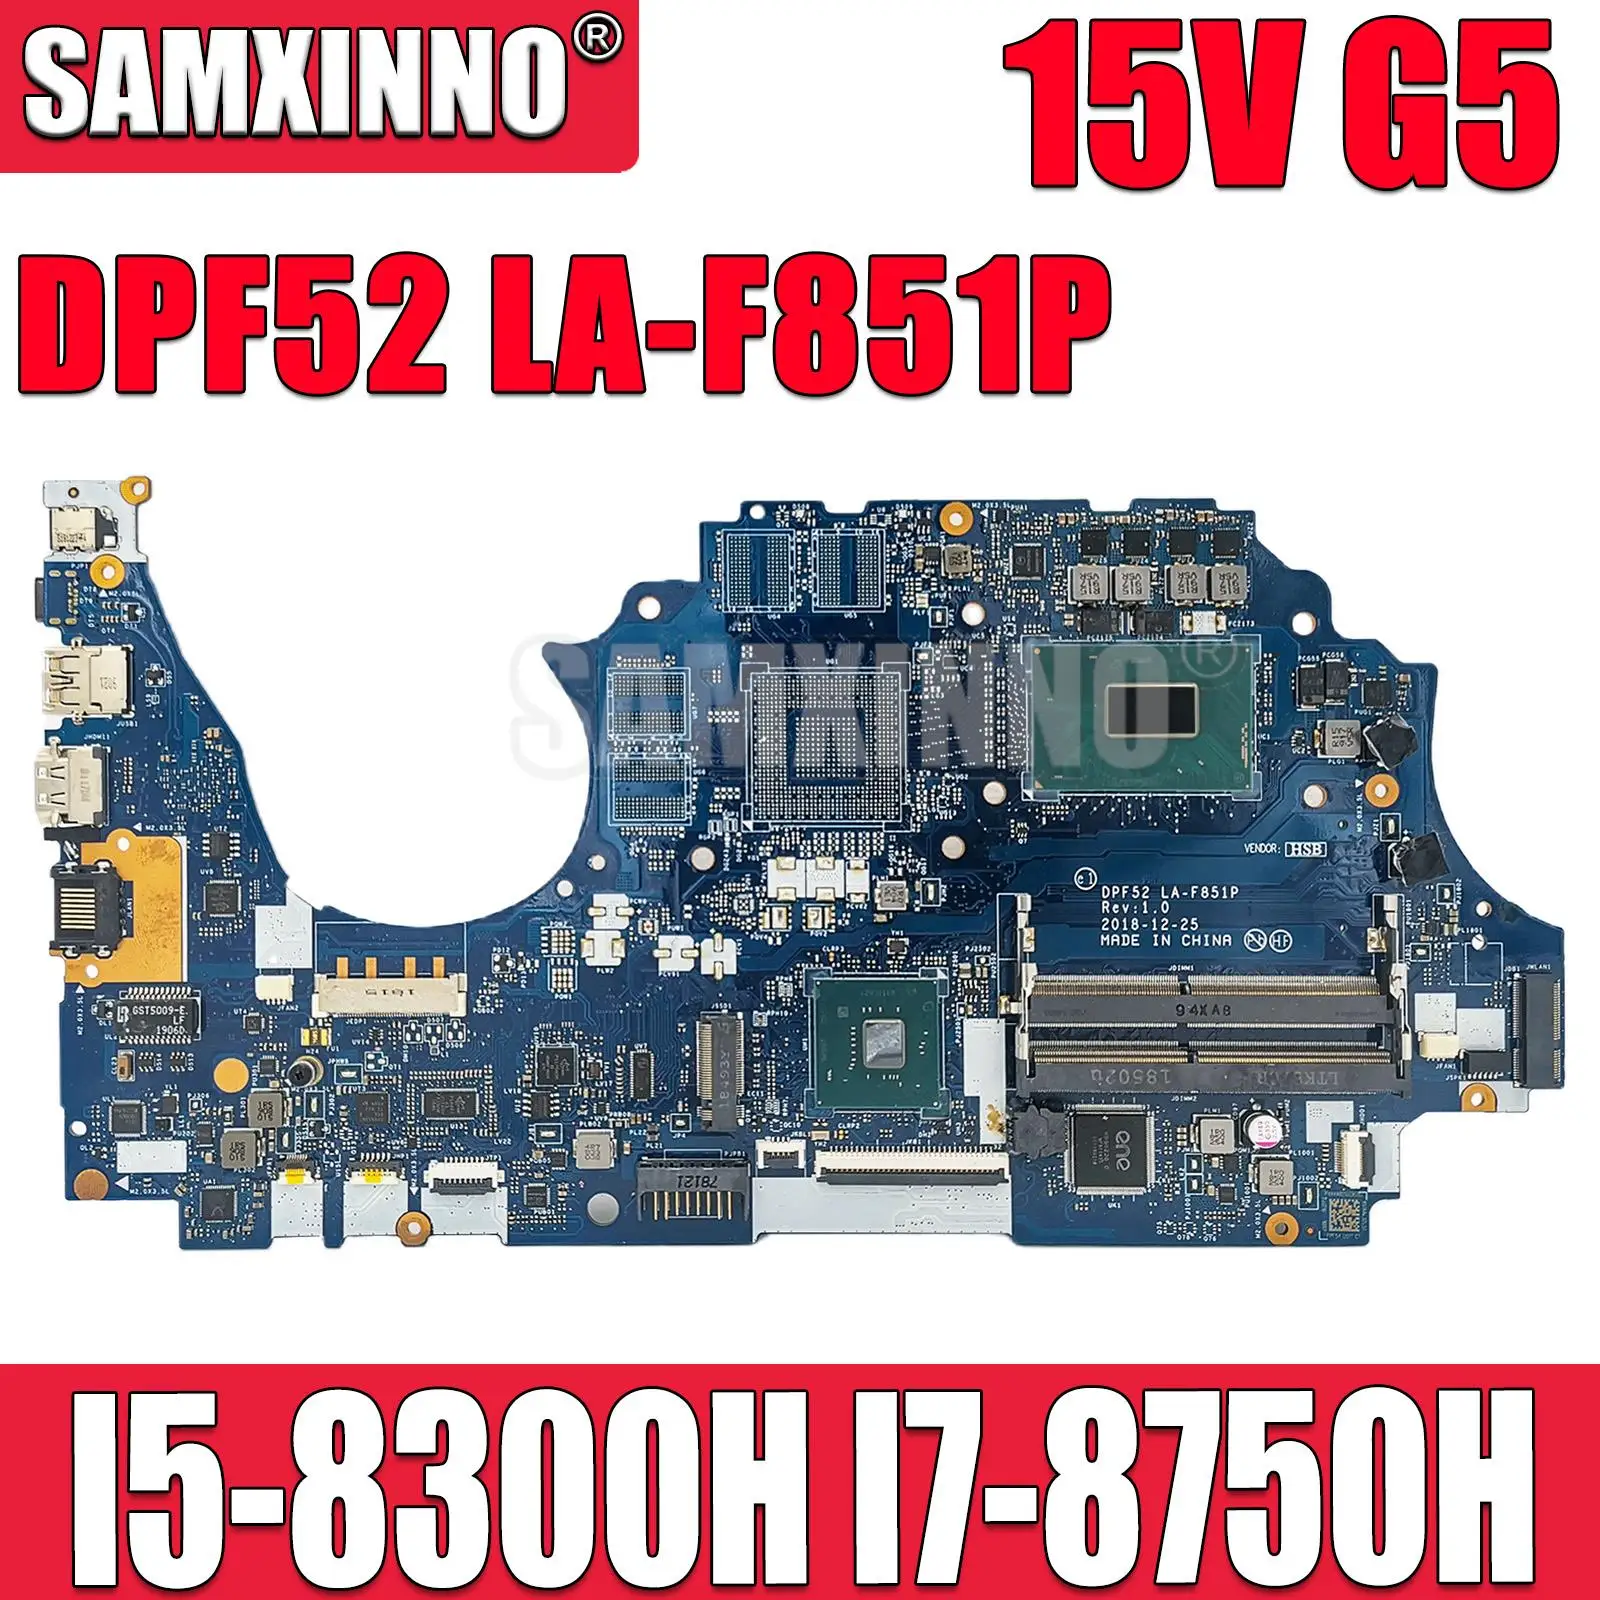 L25090-601 Para HP Zbook 15V G5 Laptop placa-Mãe DPF52 LA-F851P placa-mãe com I5-8300H I7-8750H CPU DDR4 100% Testado